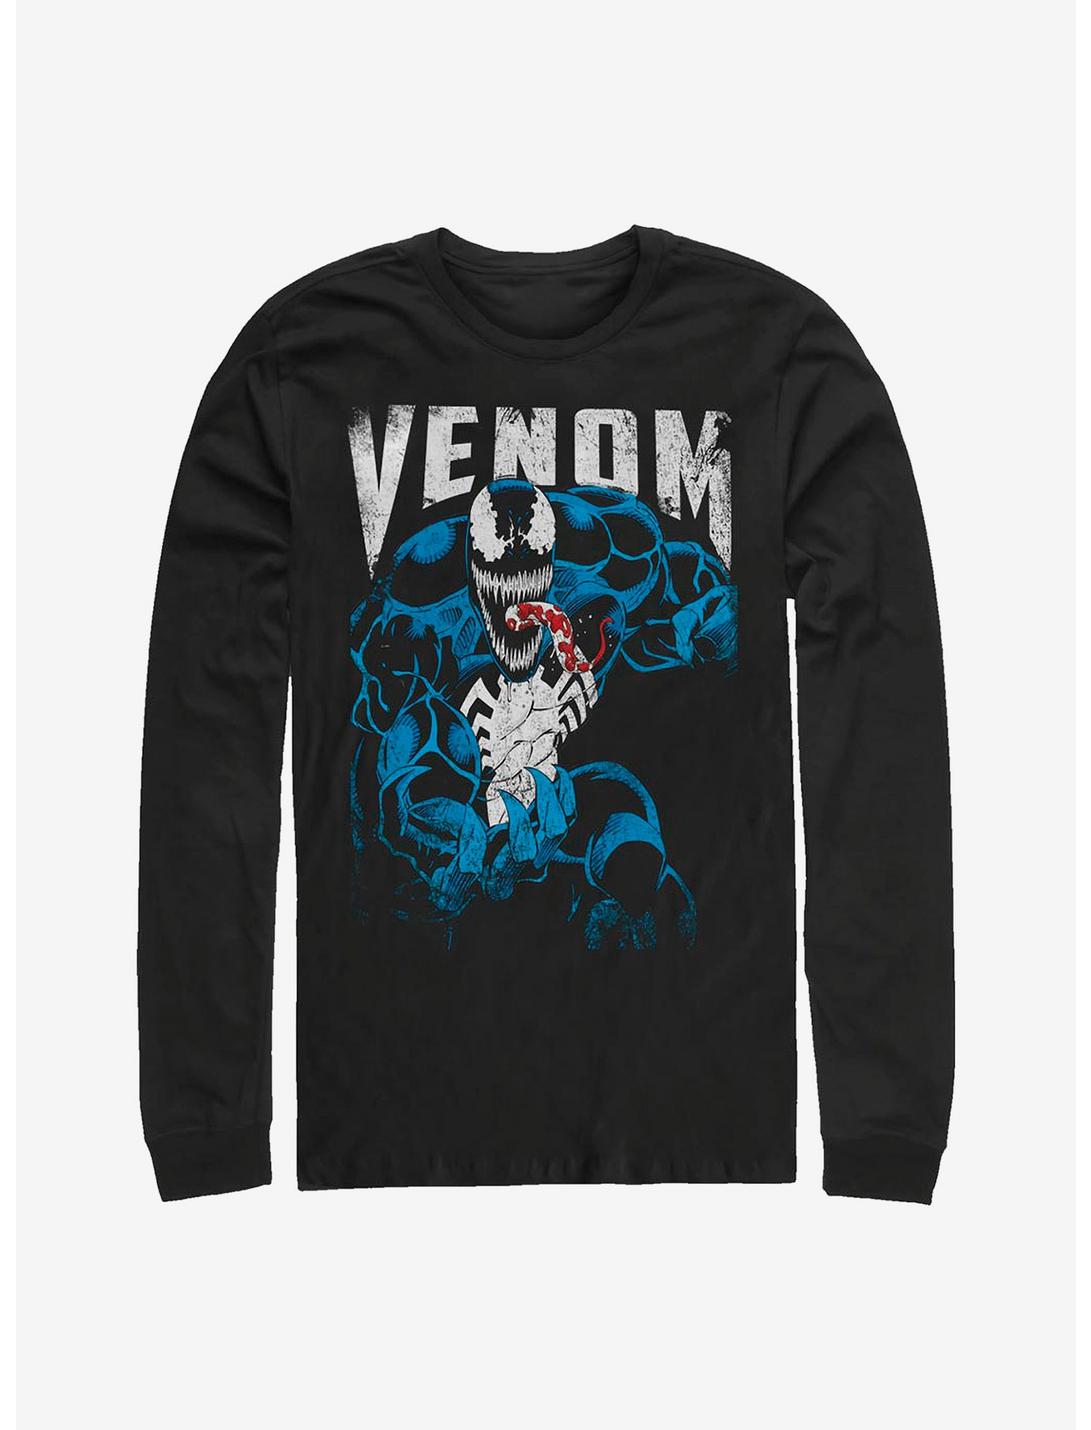 Marvel Venom: Let There Be Carnage Venom Grunge Long-Sleeve T-Shirt, BLACK, hi-res